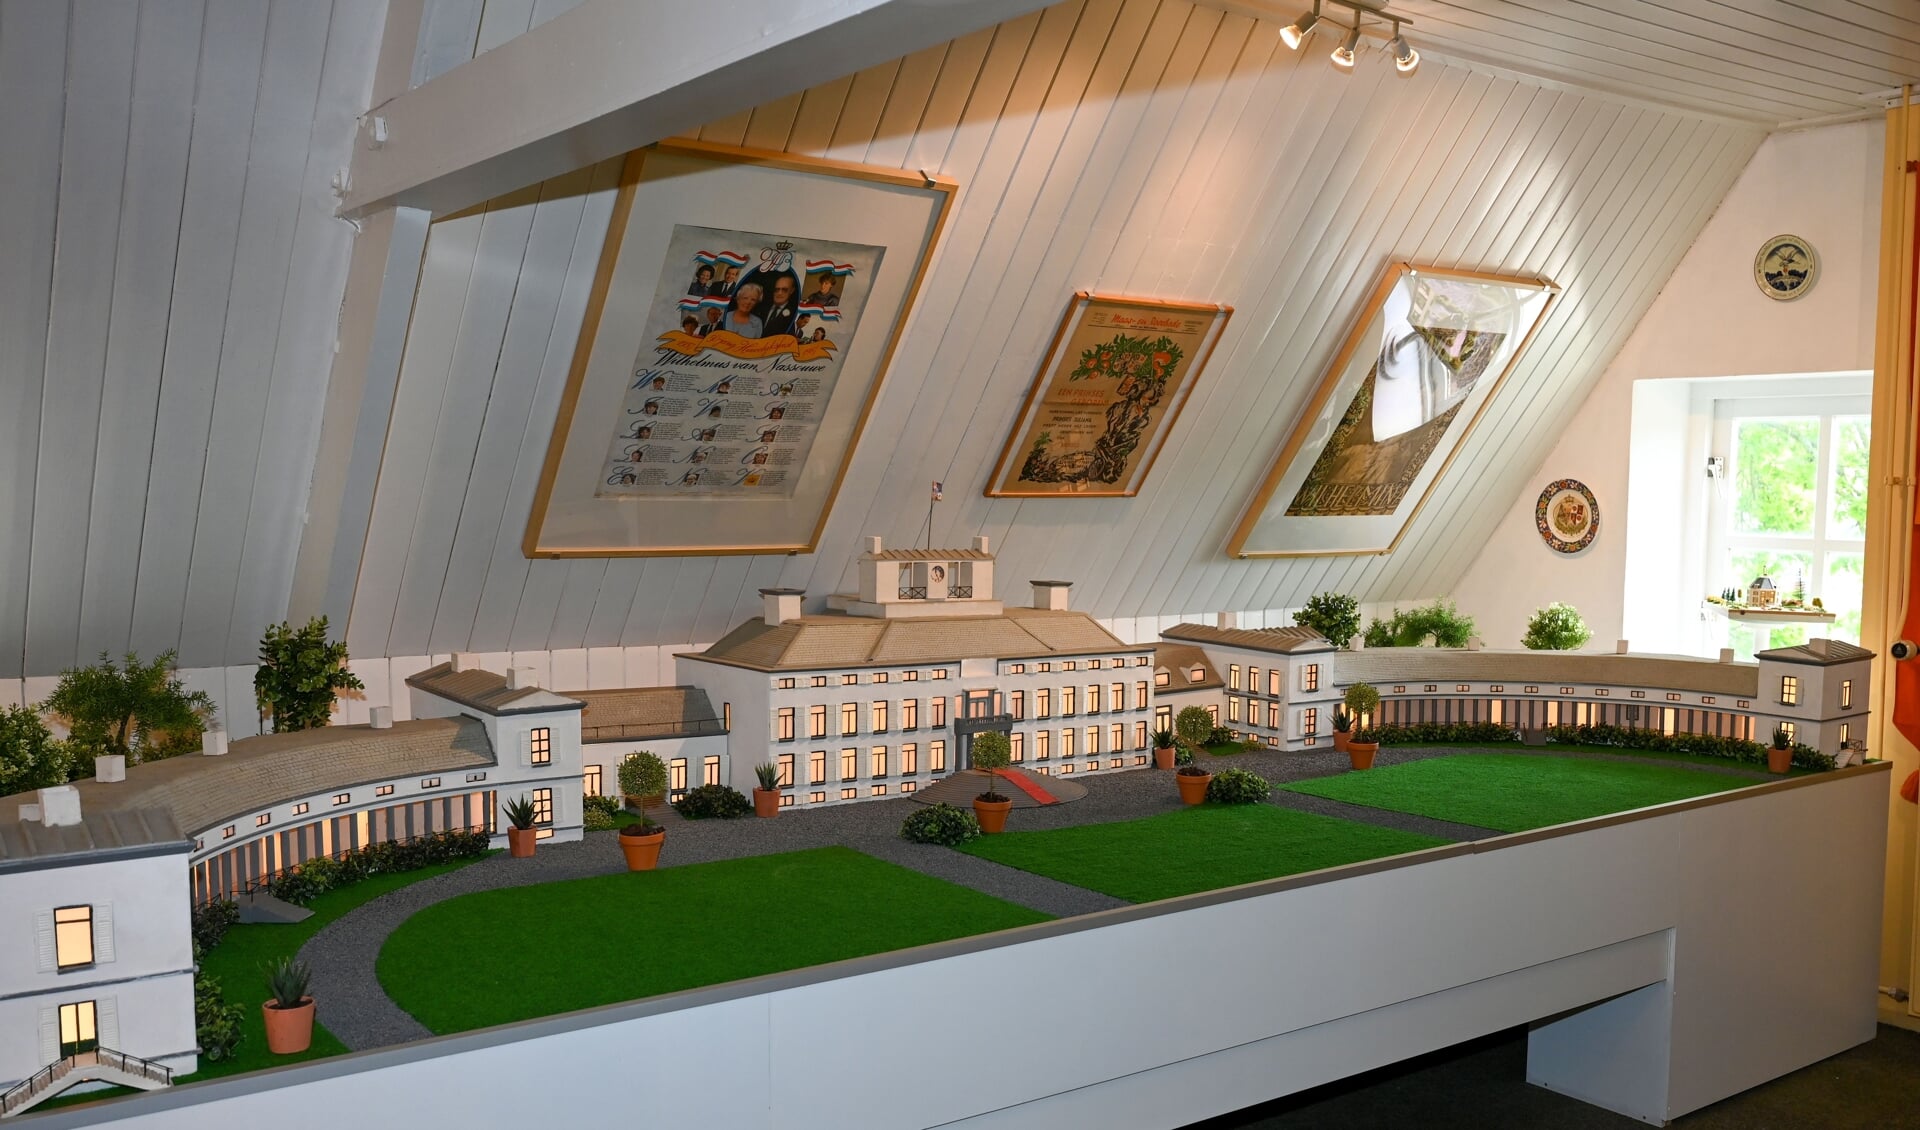 De maquette van Paleis Soestdijk is - na een 'uitje' op een expo in Amsterdam - terug in Museum Soest.